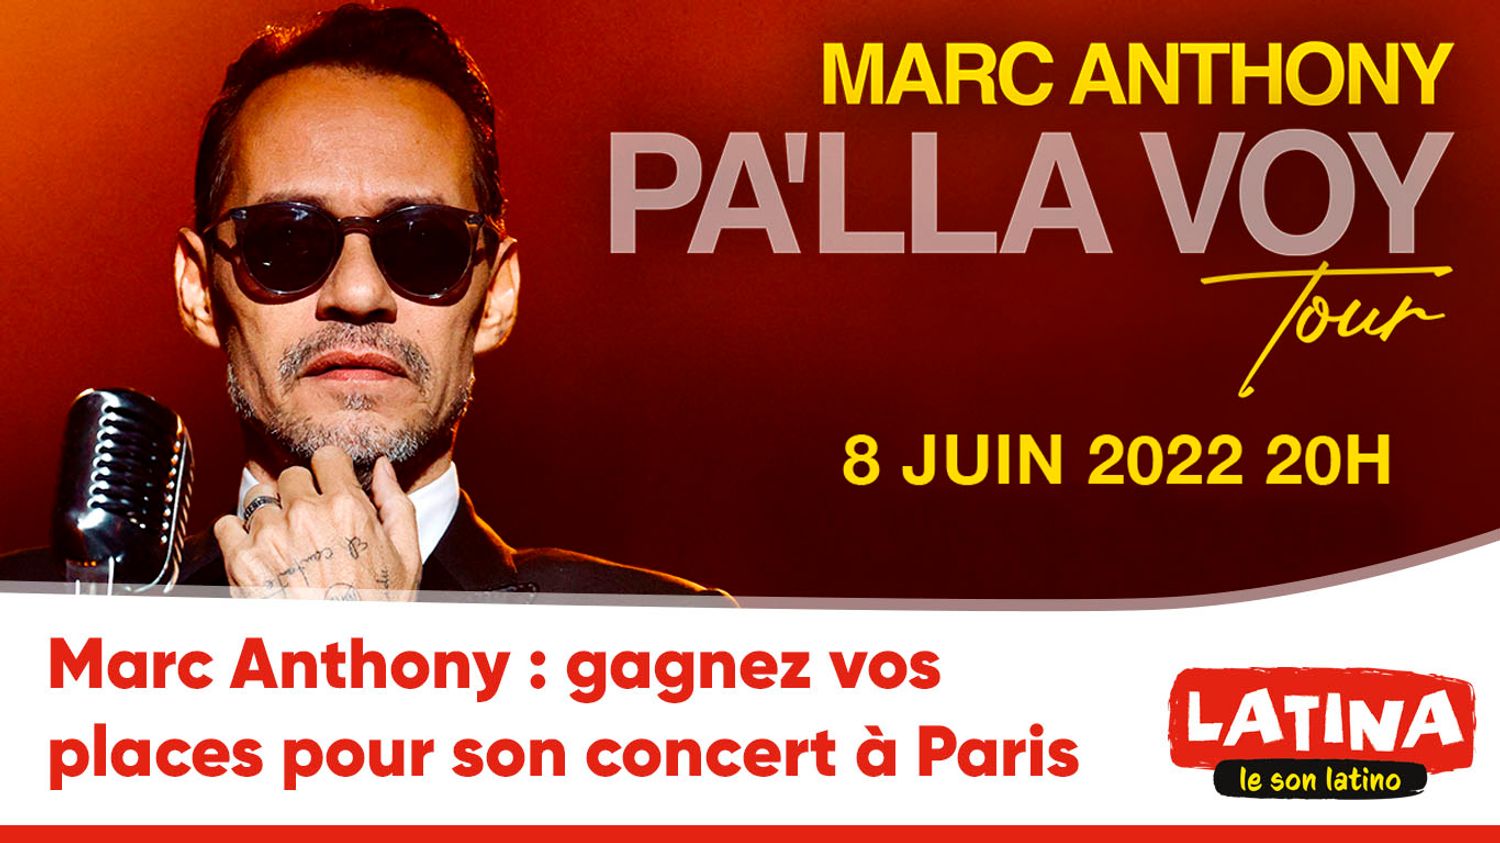 Marc Anthony : places Paris